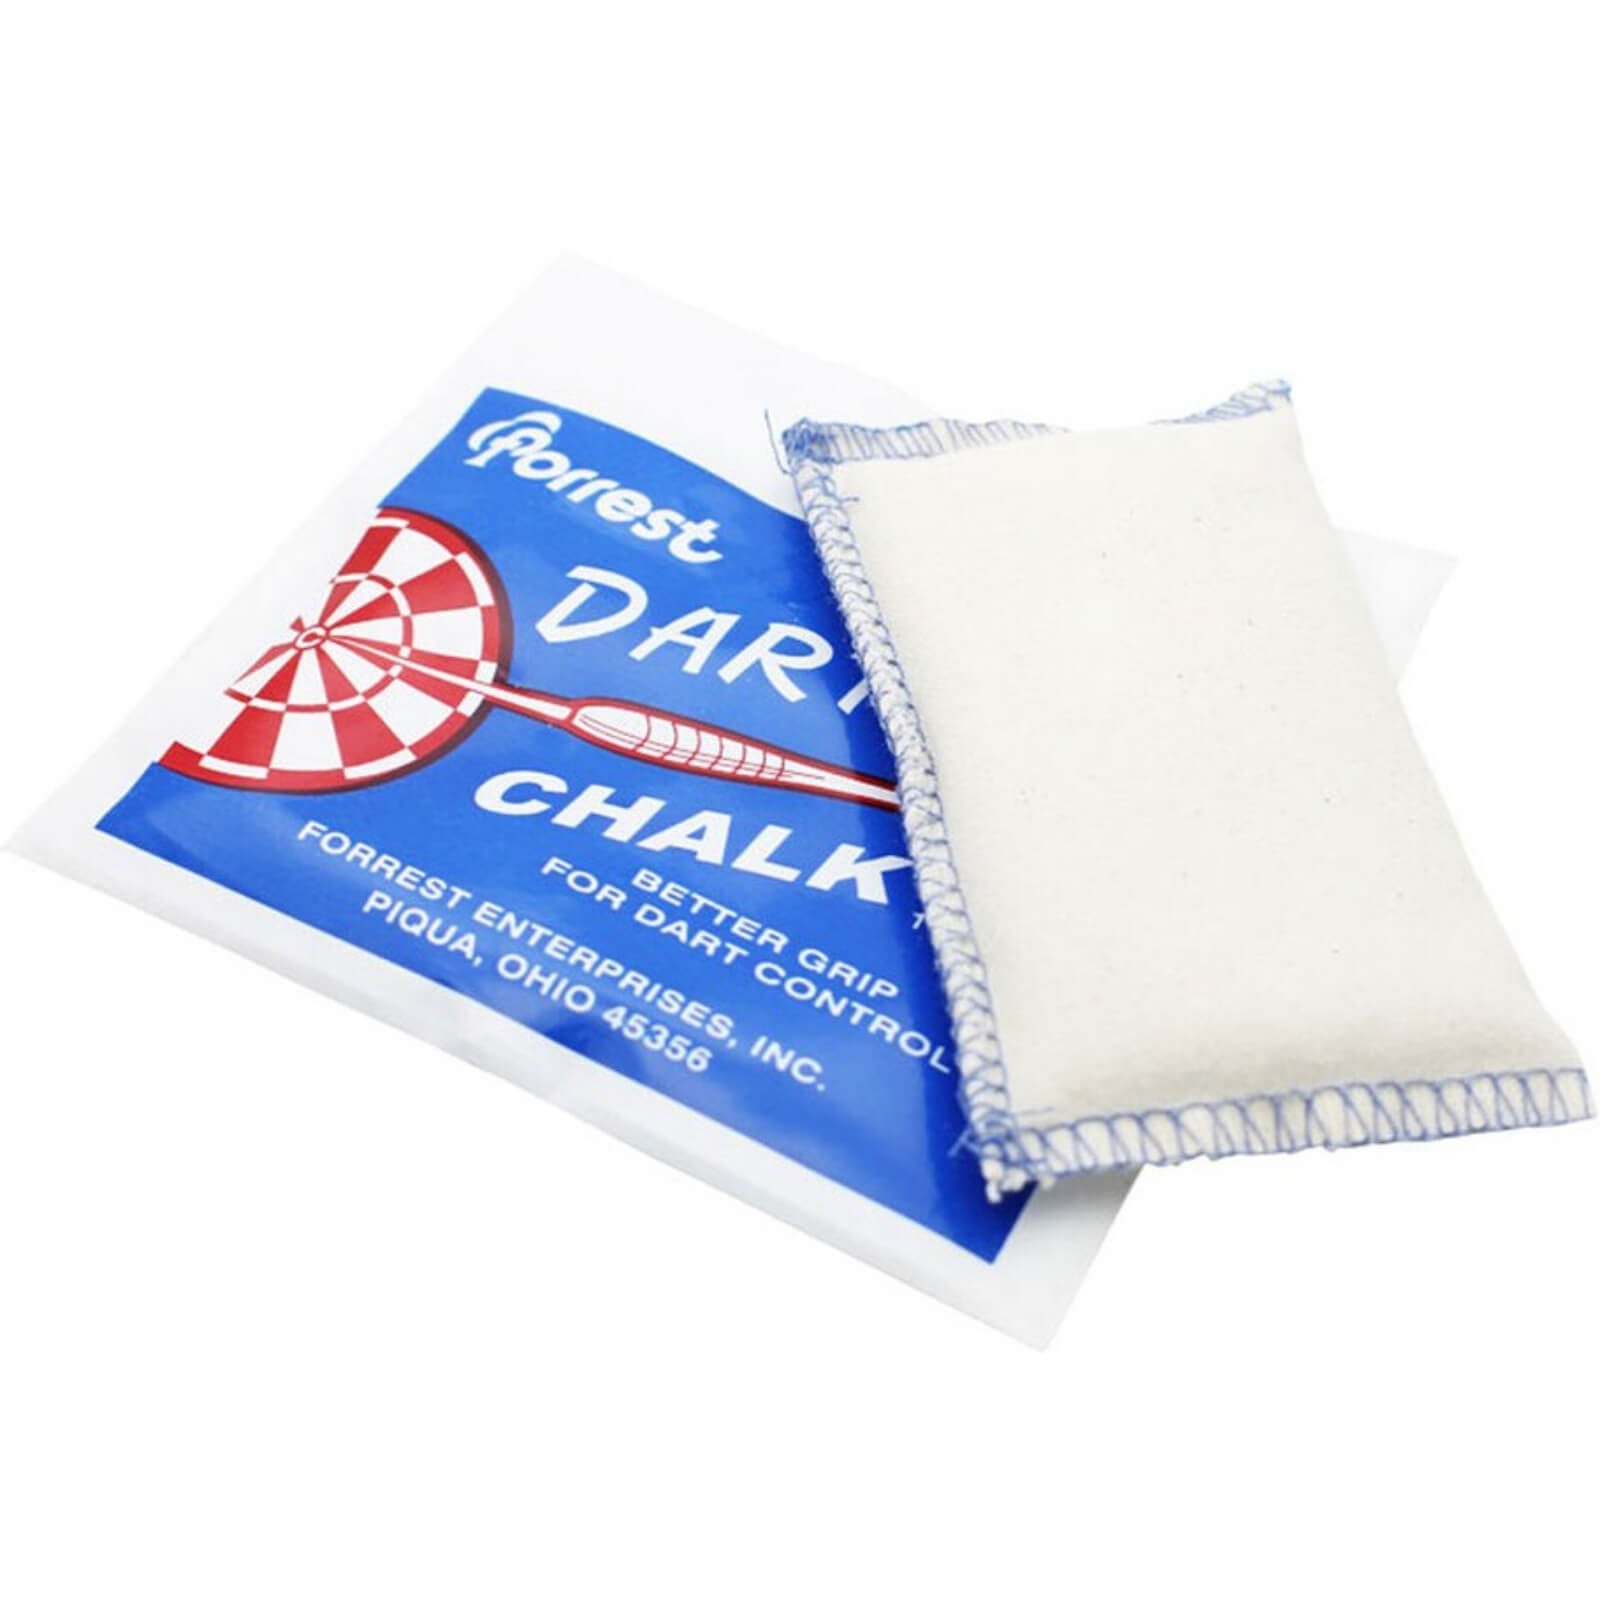 Grip Accessories - Forrest - Darter Chalk - Anti Slip Grip Bag 